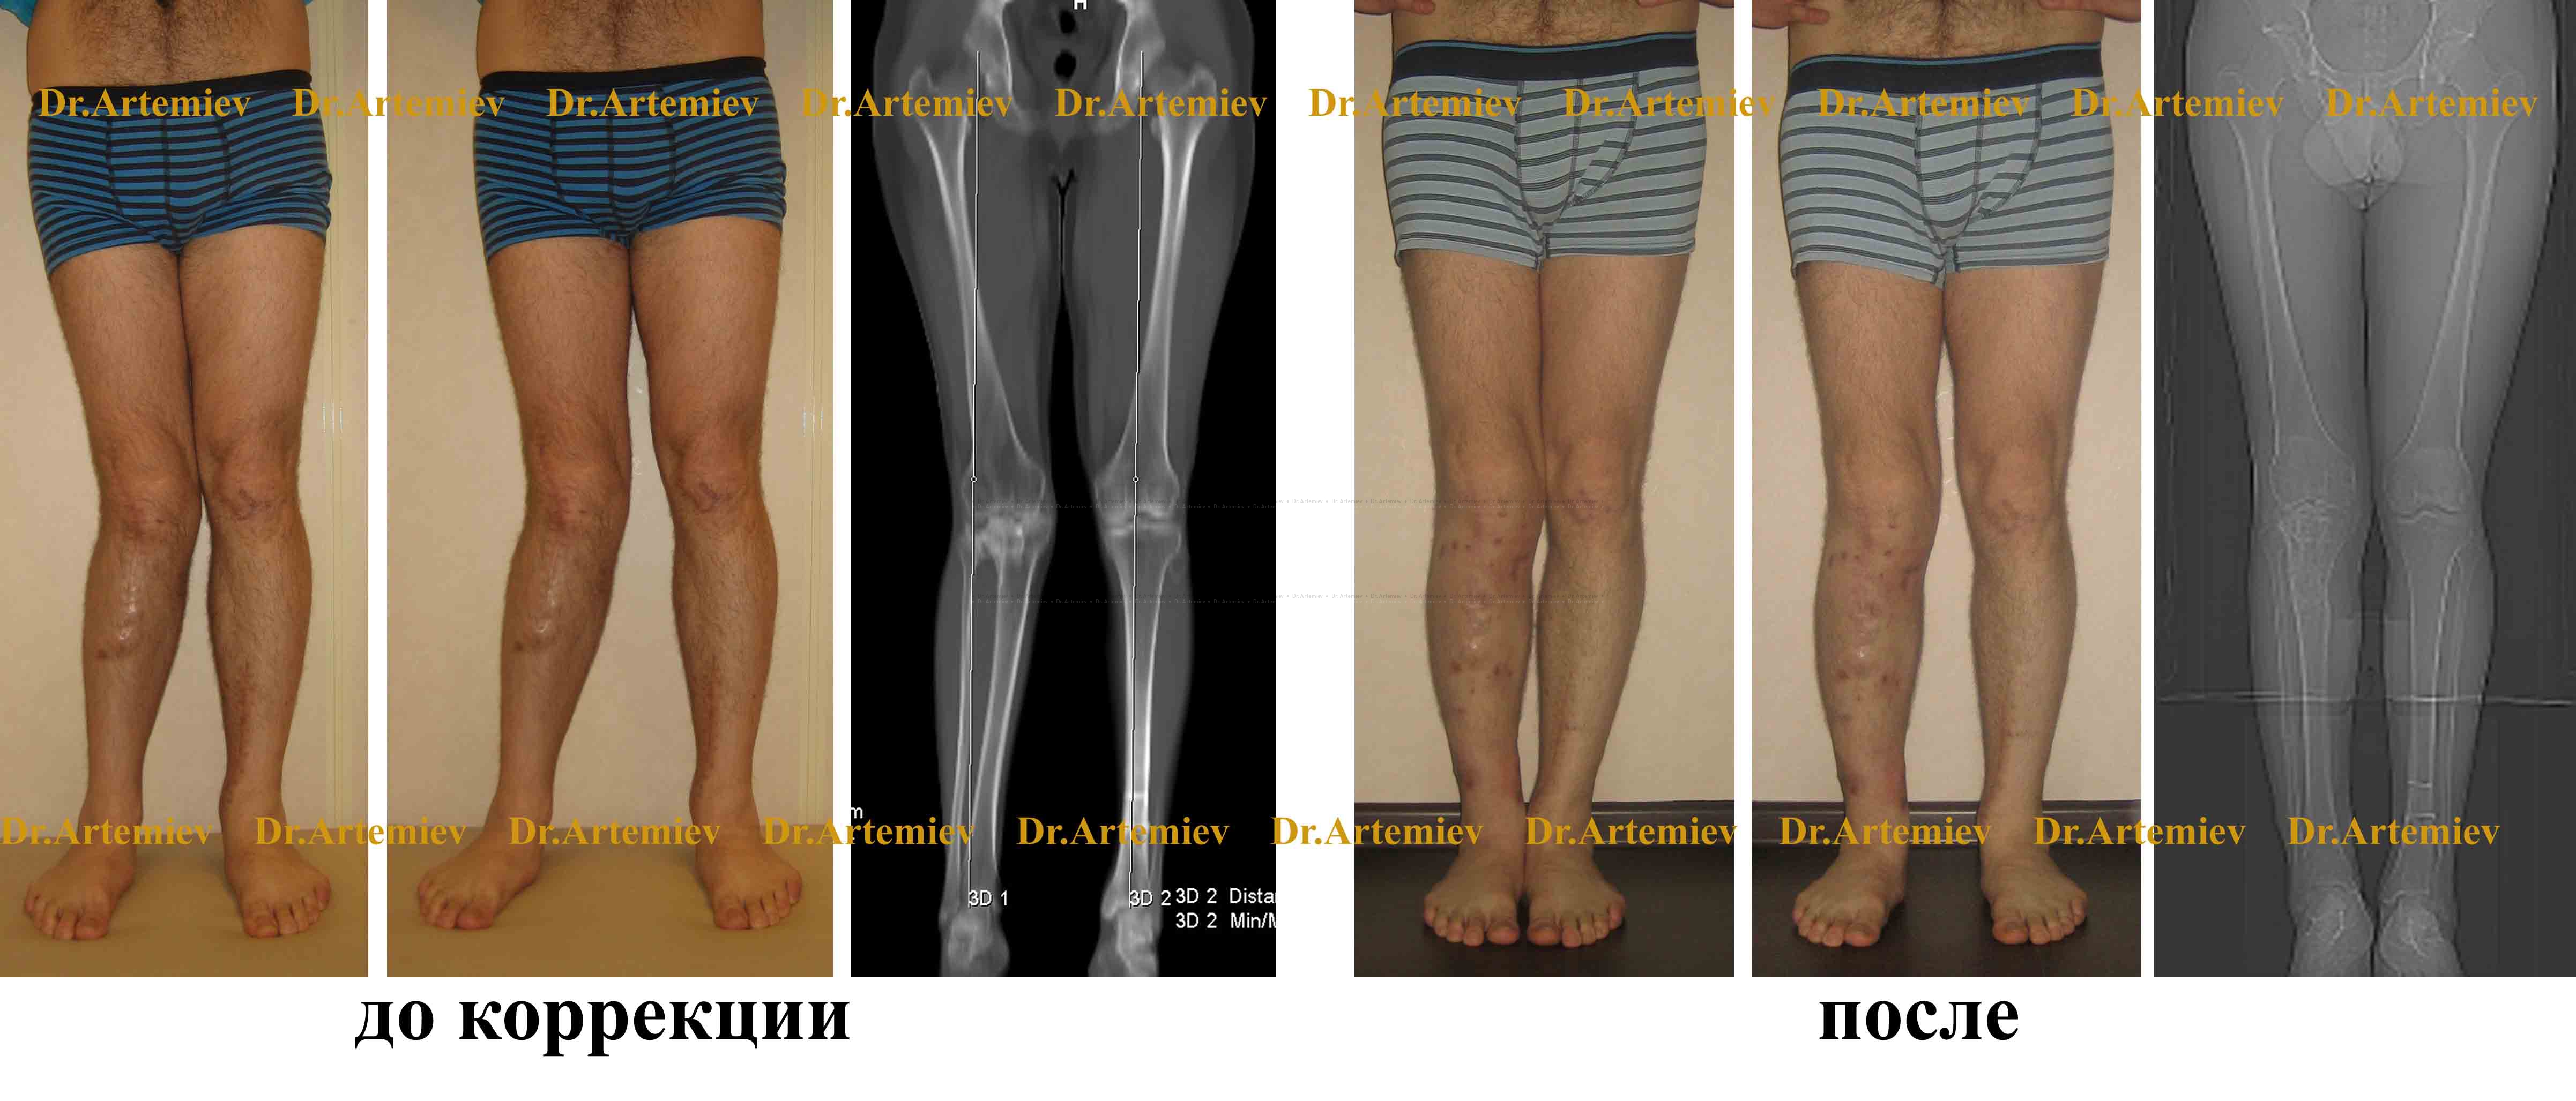 Проявления и лечение рекурвации колена, причины развития. Клиника Бобыря